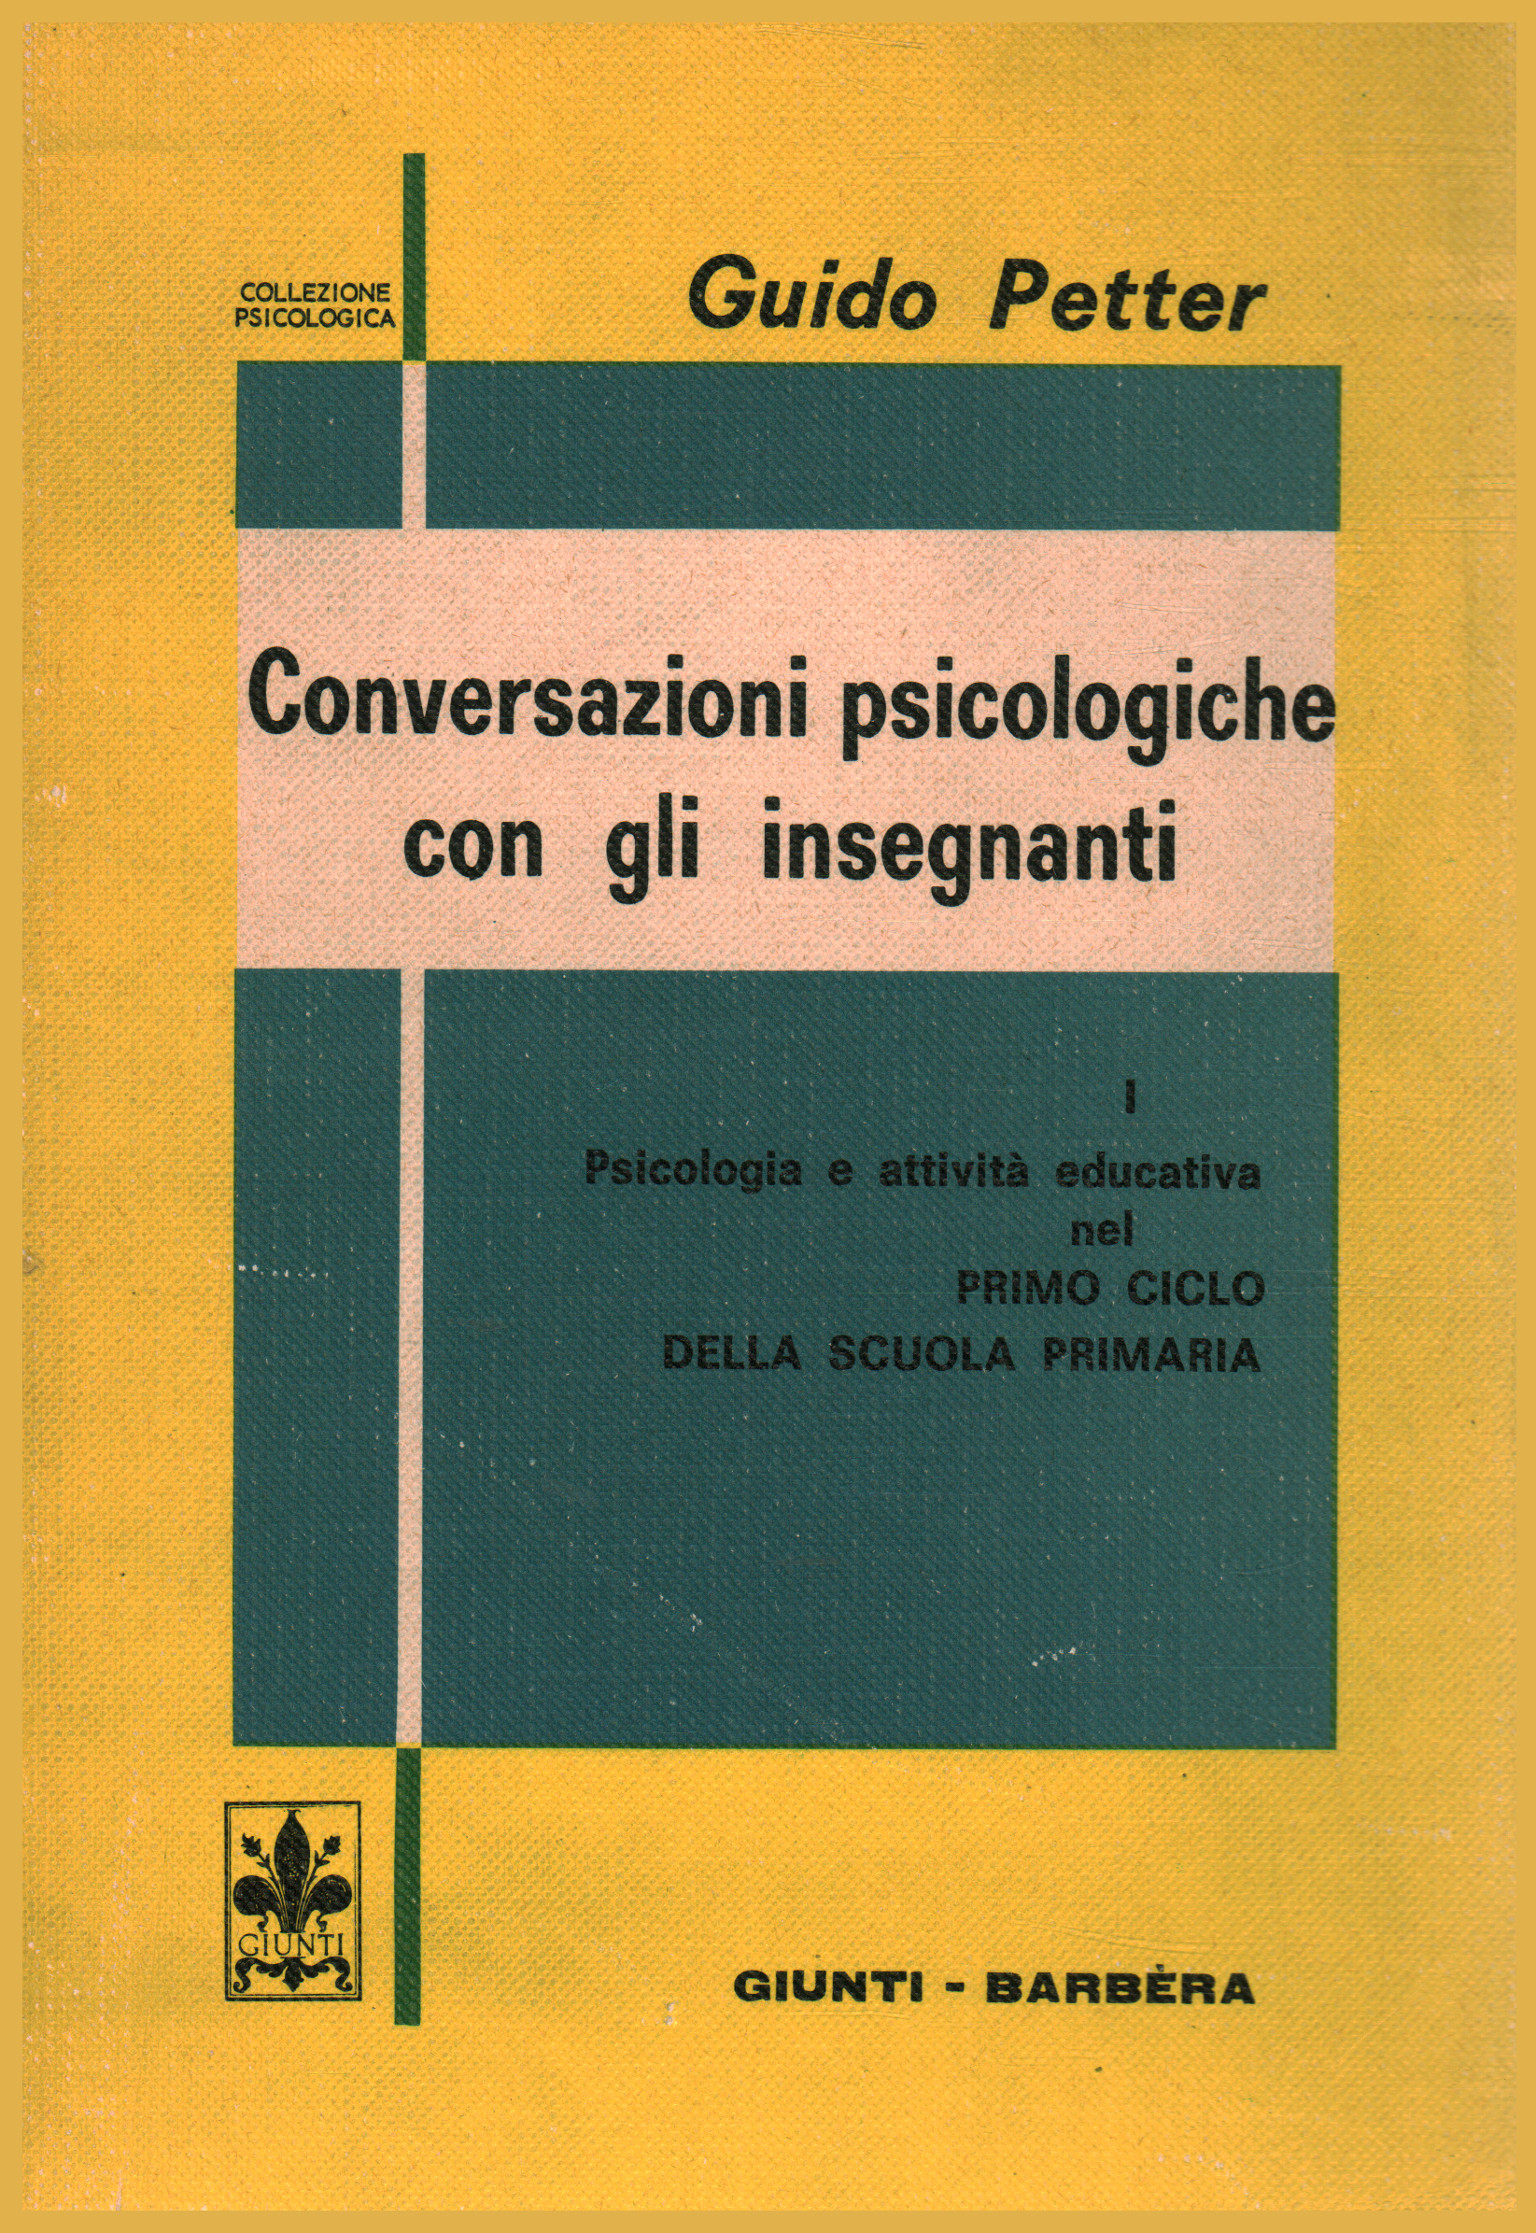 Conversazioni psicologiche con gli insegnanti, Guido Petter